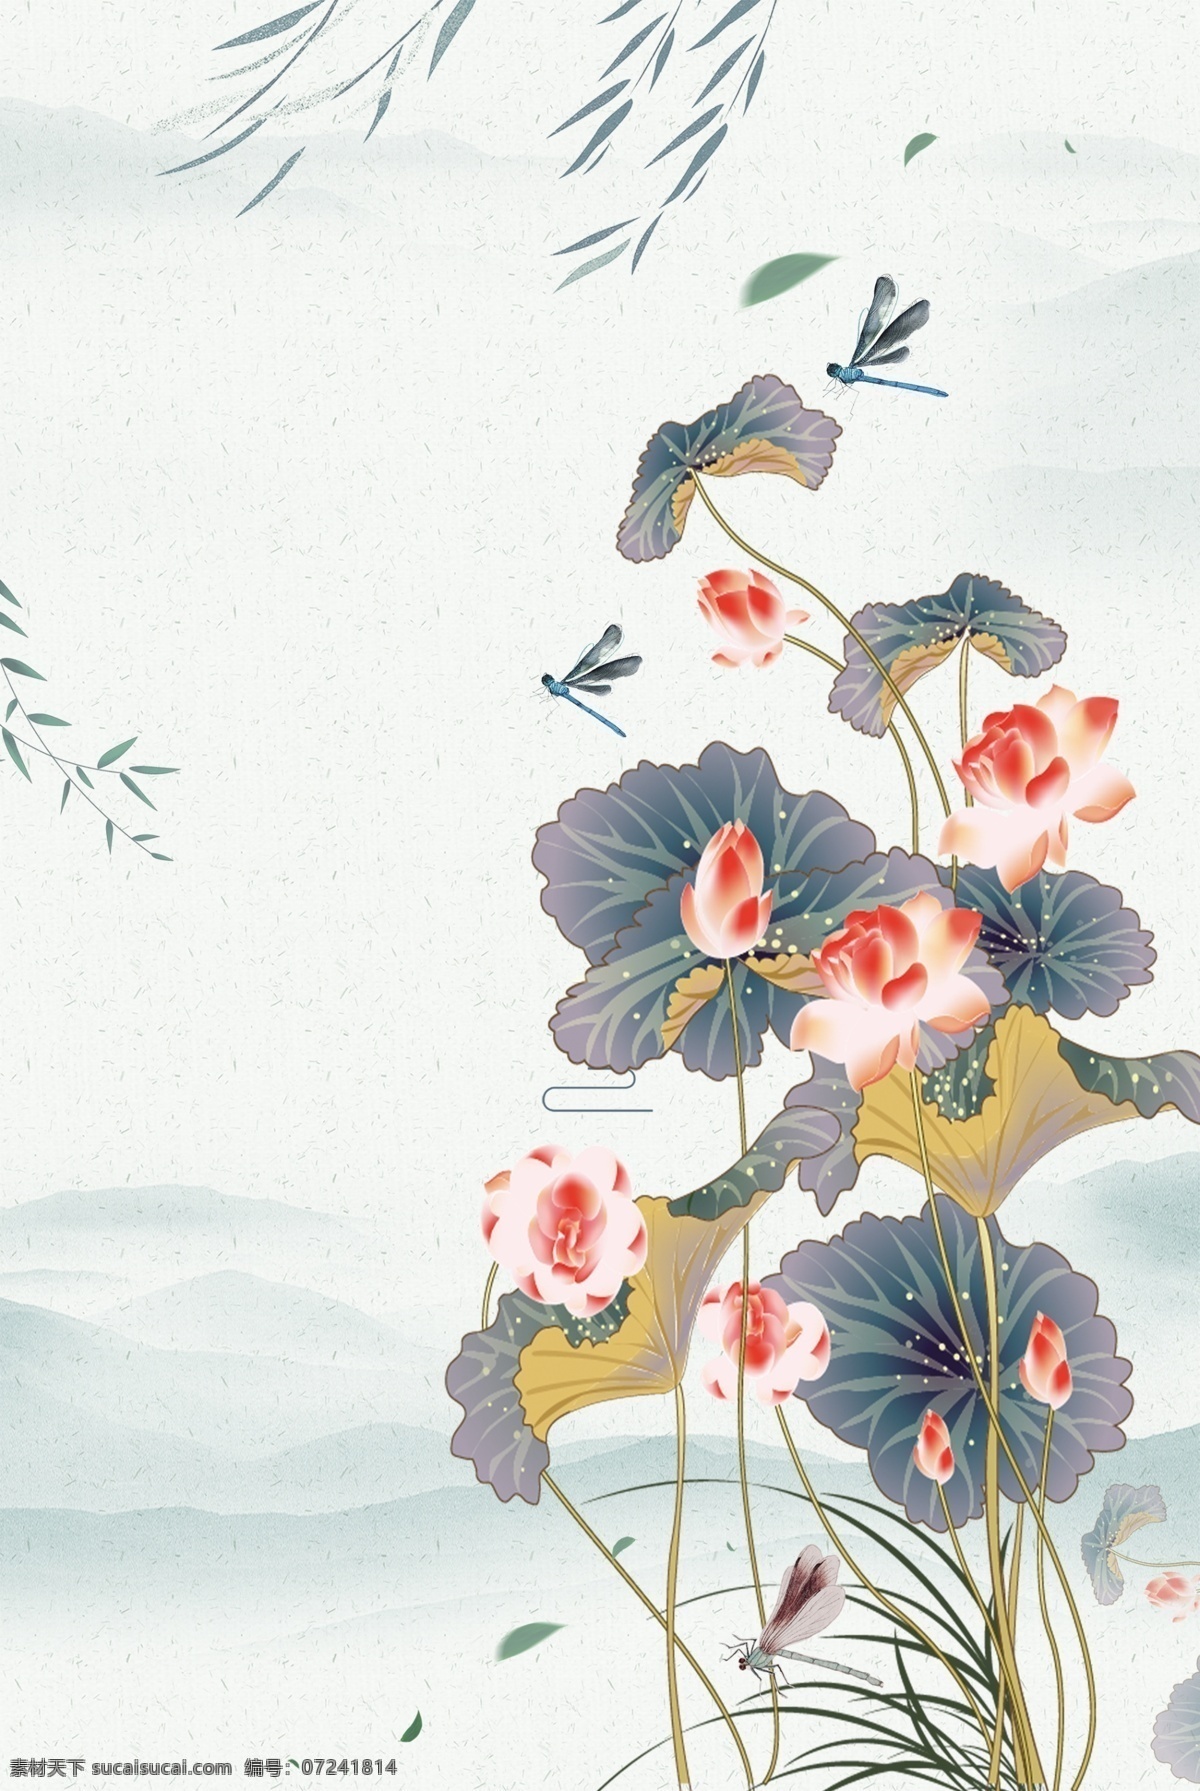 中国 风 荷塘 月色 水墨 中国风 手绘 荷花插画 唯美 夏天 荷塘月色 分层 风景